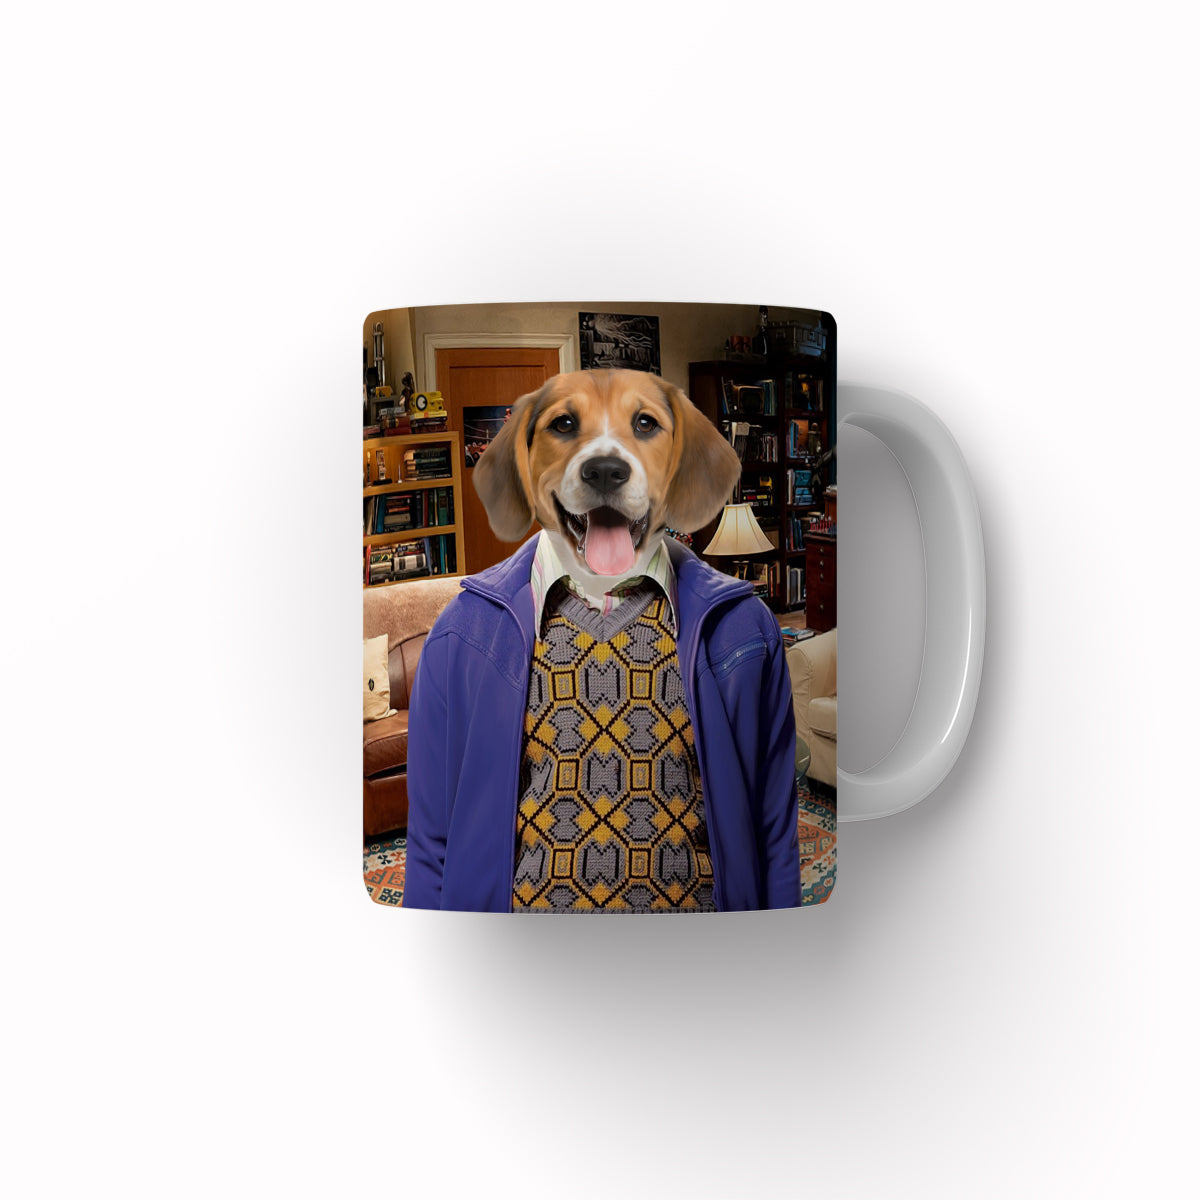 Paw & Glory, paw and glory, pet mug, personalized pet mug, personalized puppy mug, mug with dog picture, personalized dog coffee mug, custom mug with dogs, Pet Portraits Mug,